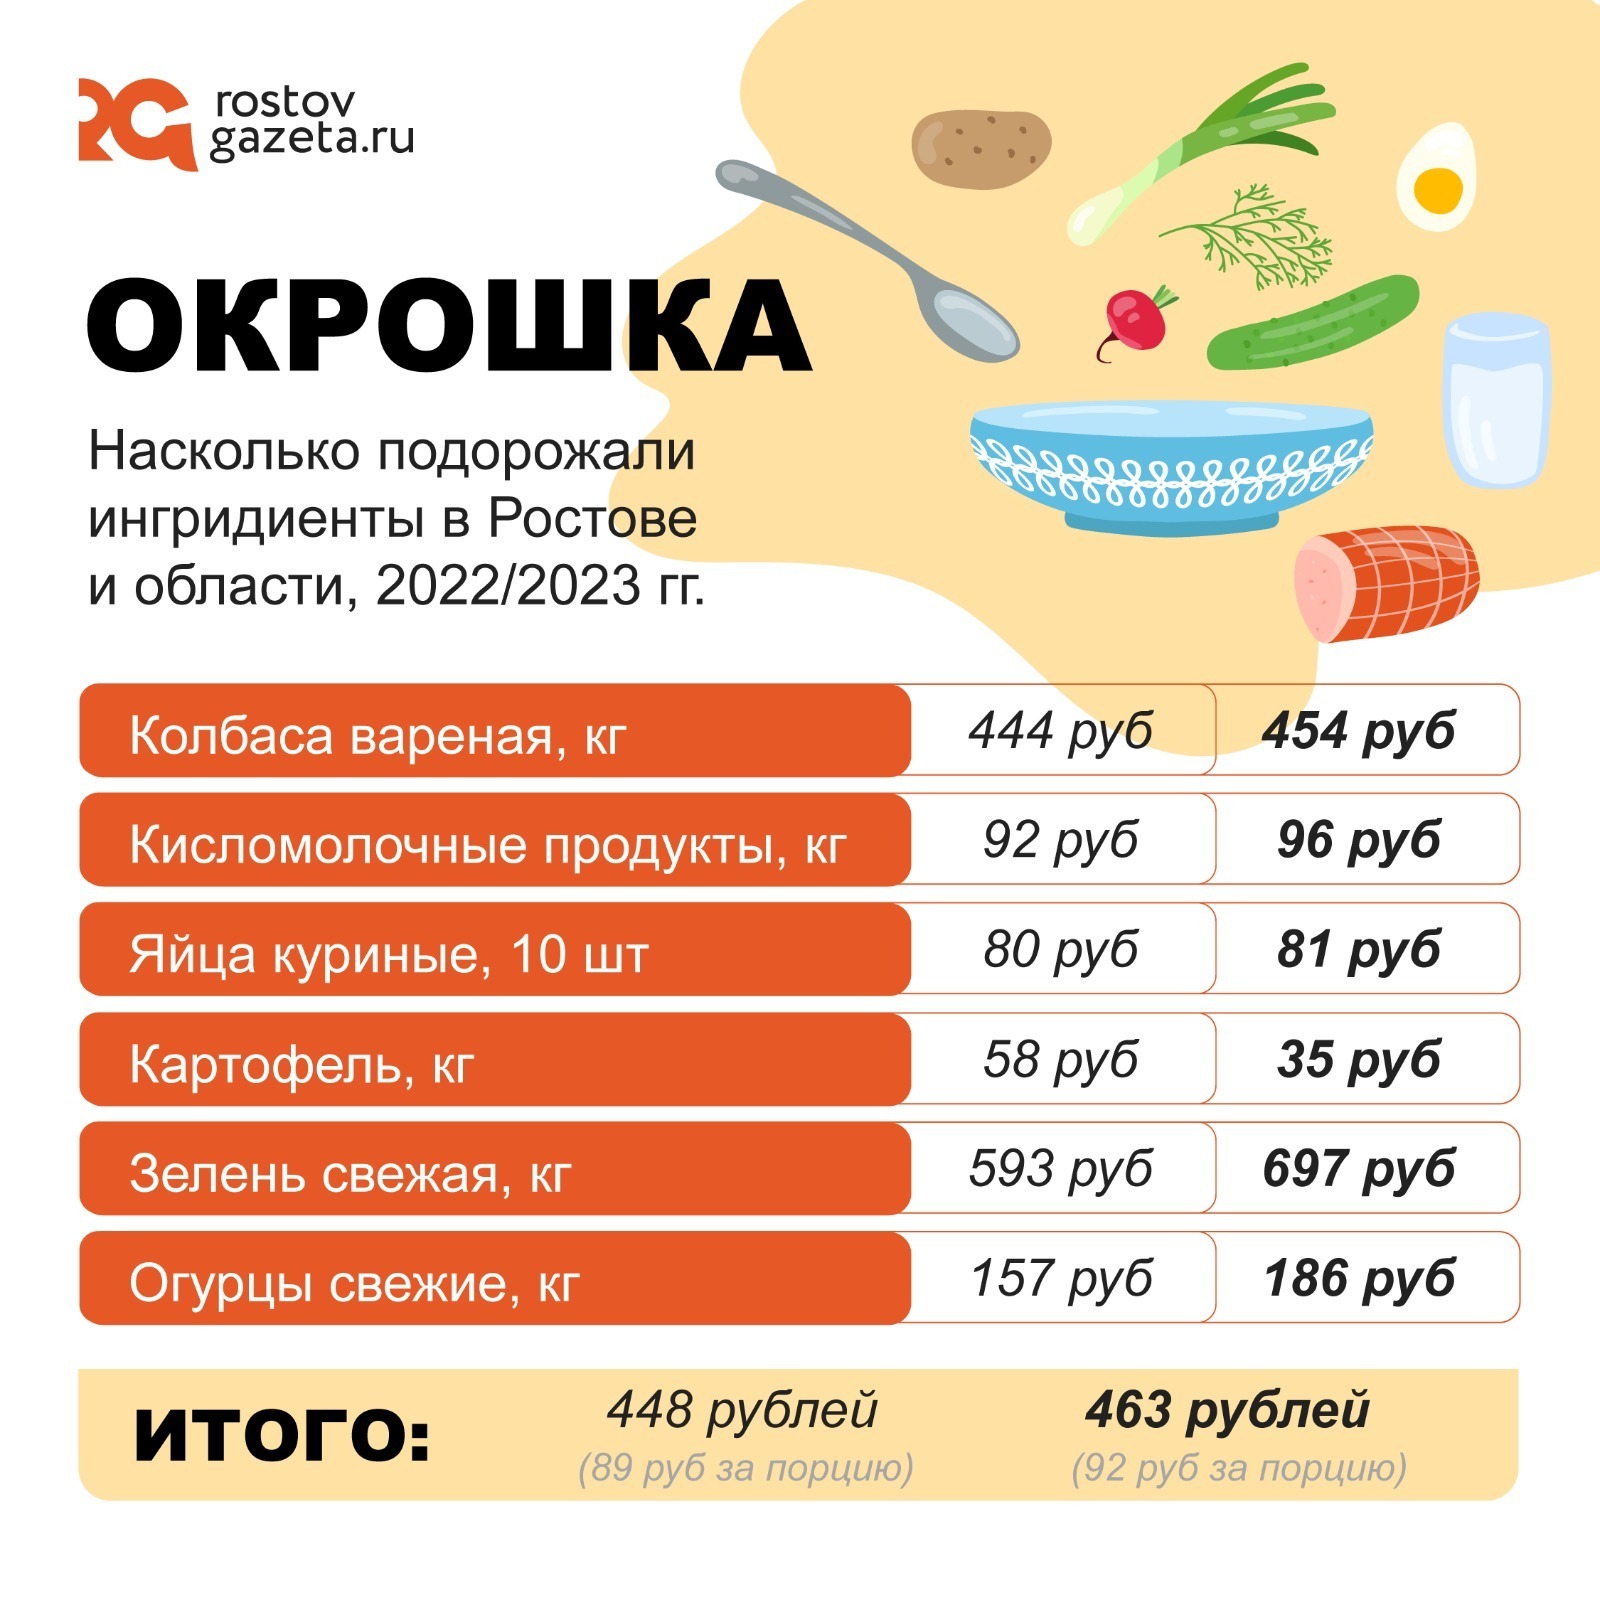 Целая кастрюля окрошки обойдется донским хозяйкам в 463,6 рубля, что на 15 рублей дороже, чем в 2022 году. А стоимость одной порции составит 92,7 рубля.